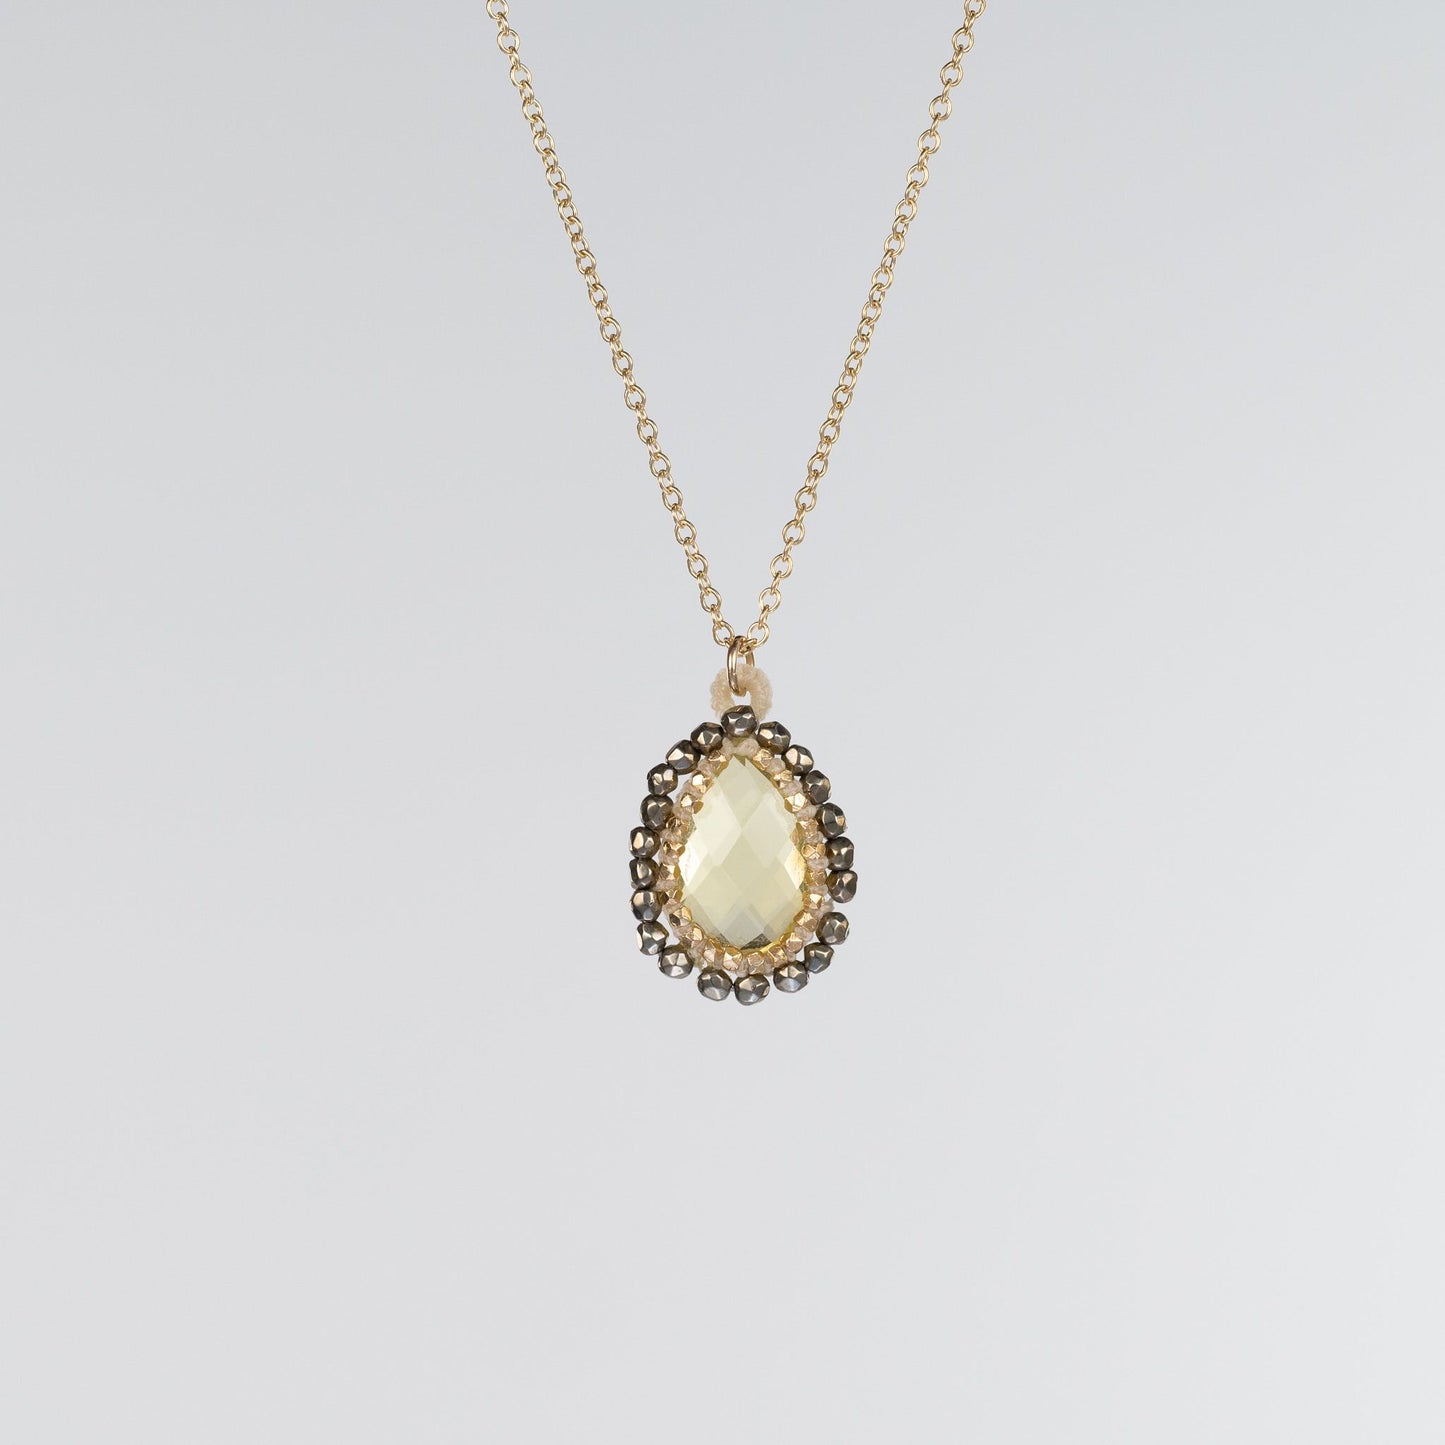 Danielle Welmond Caged Lemon Quartz Necklace with Pyrite Orbit